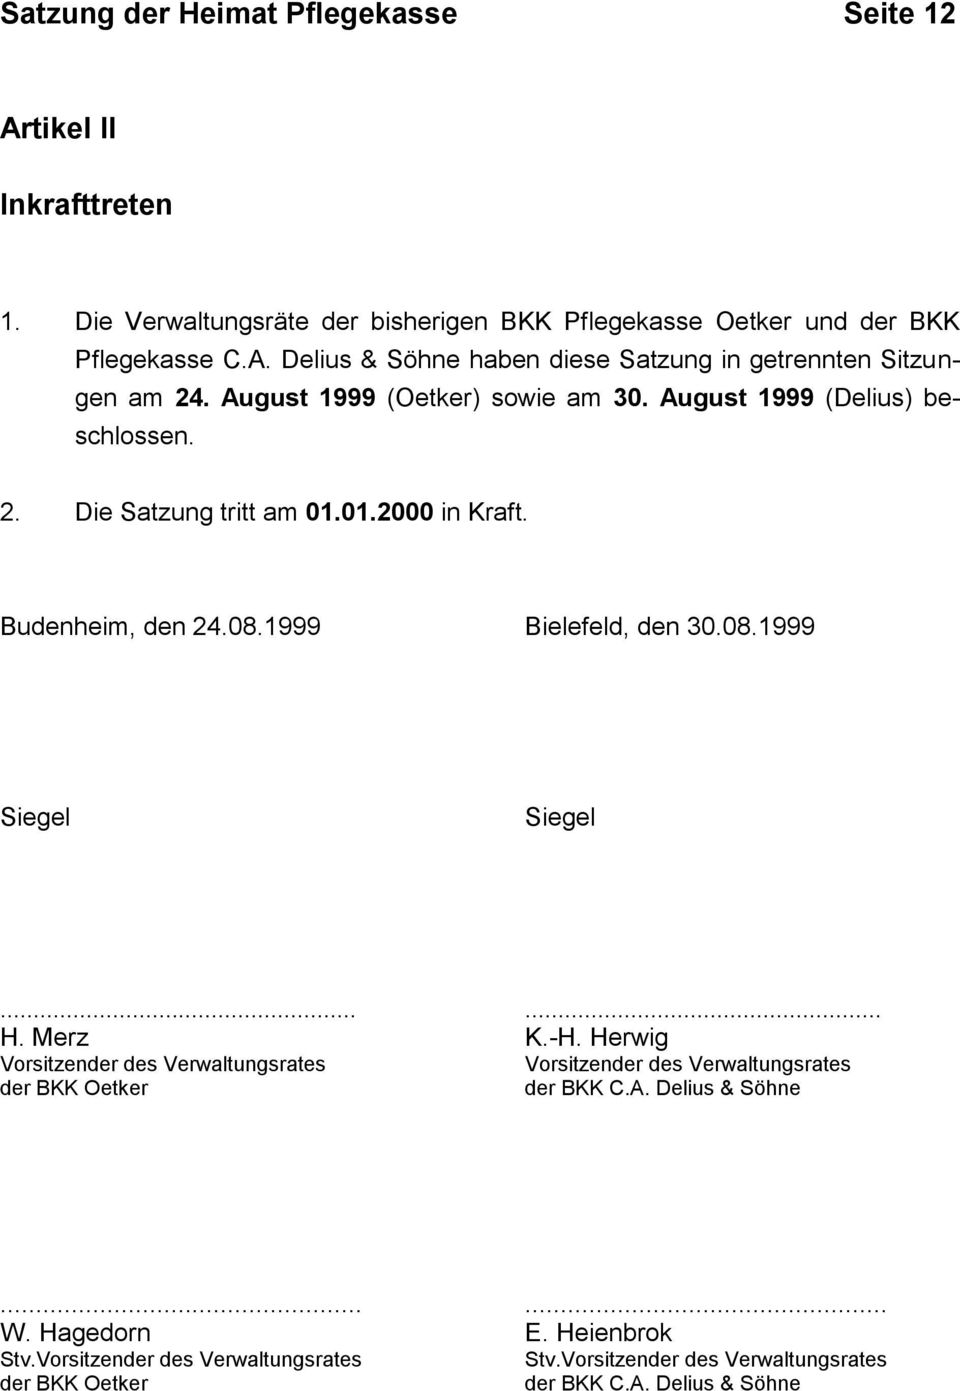 ..... H. Merz K.-H. Herwig Vorsitzender des Verwaltungsrates Vorsitzender des Verwaltungsrates der BKK Oetker der BKK C.A. Delius & Söhne...... W. Hagedorn E.